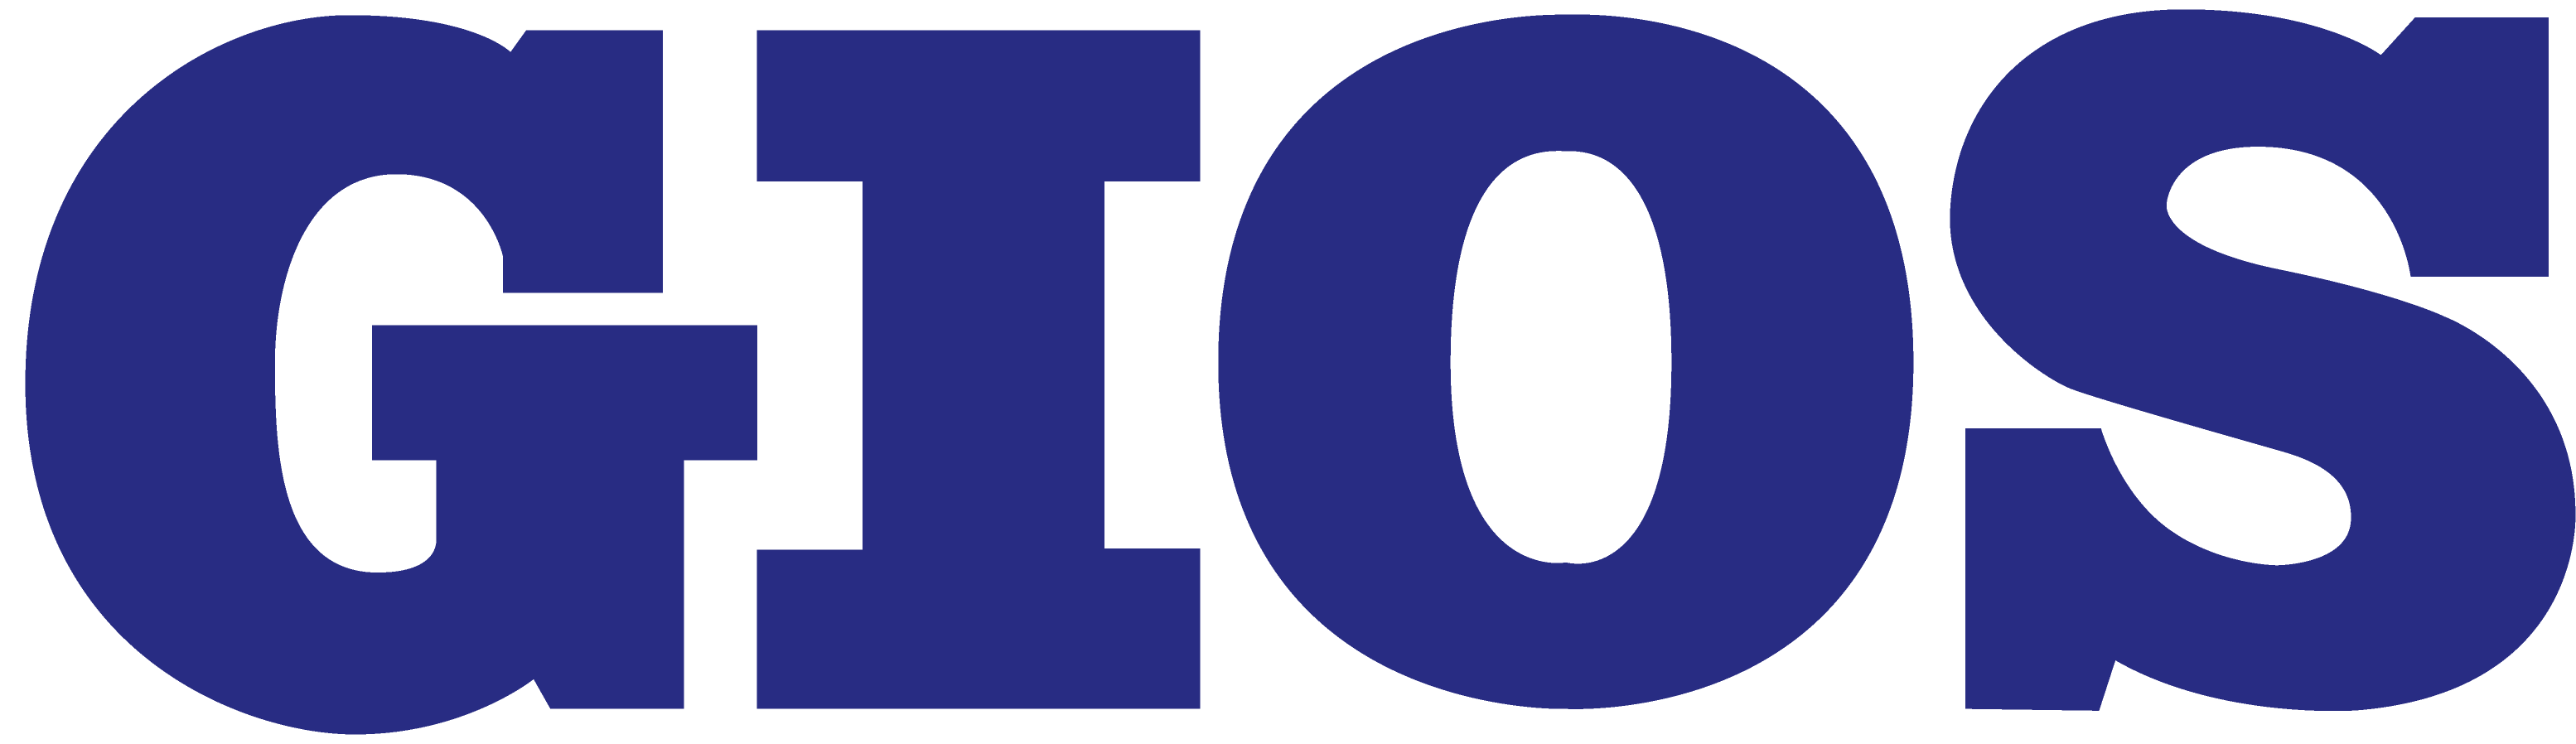 logo the gios